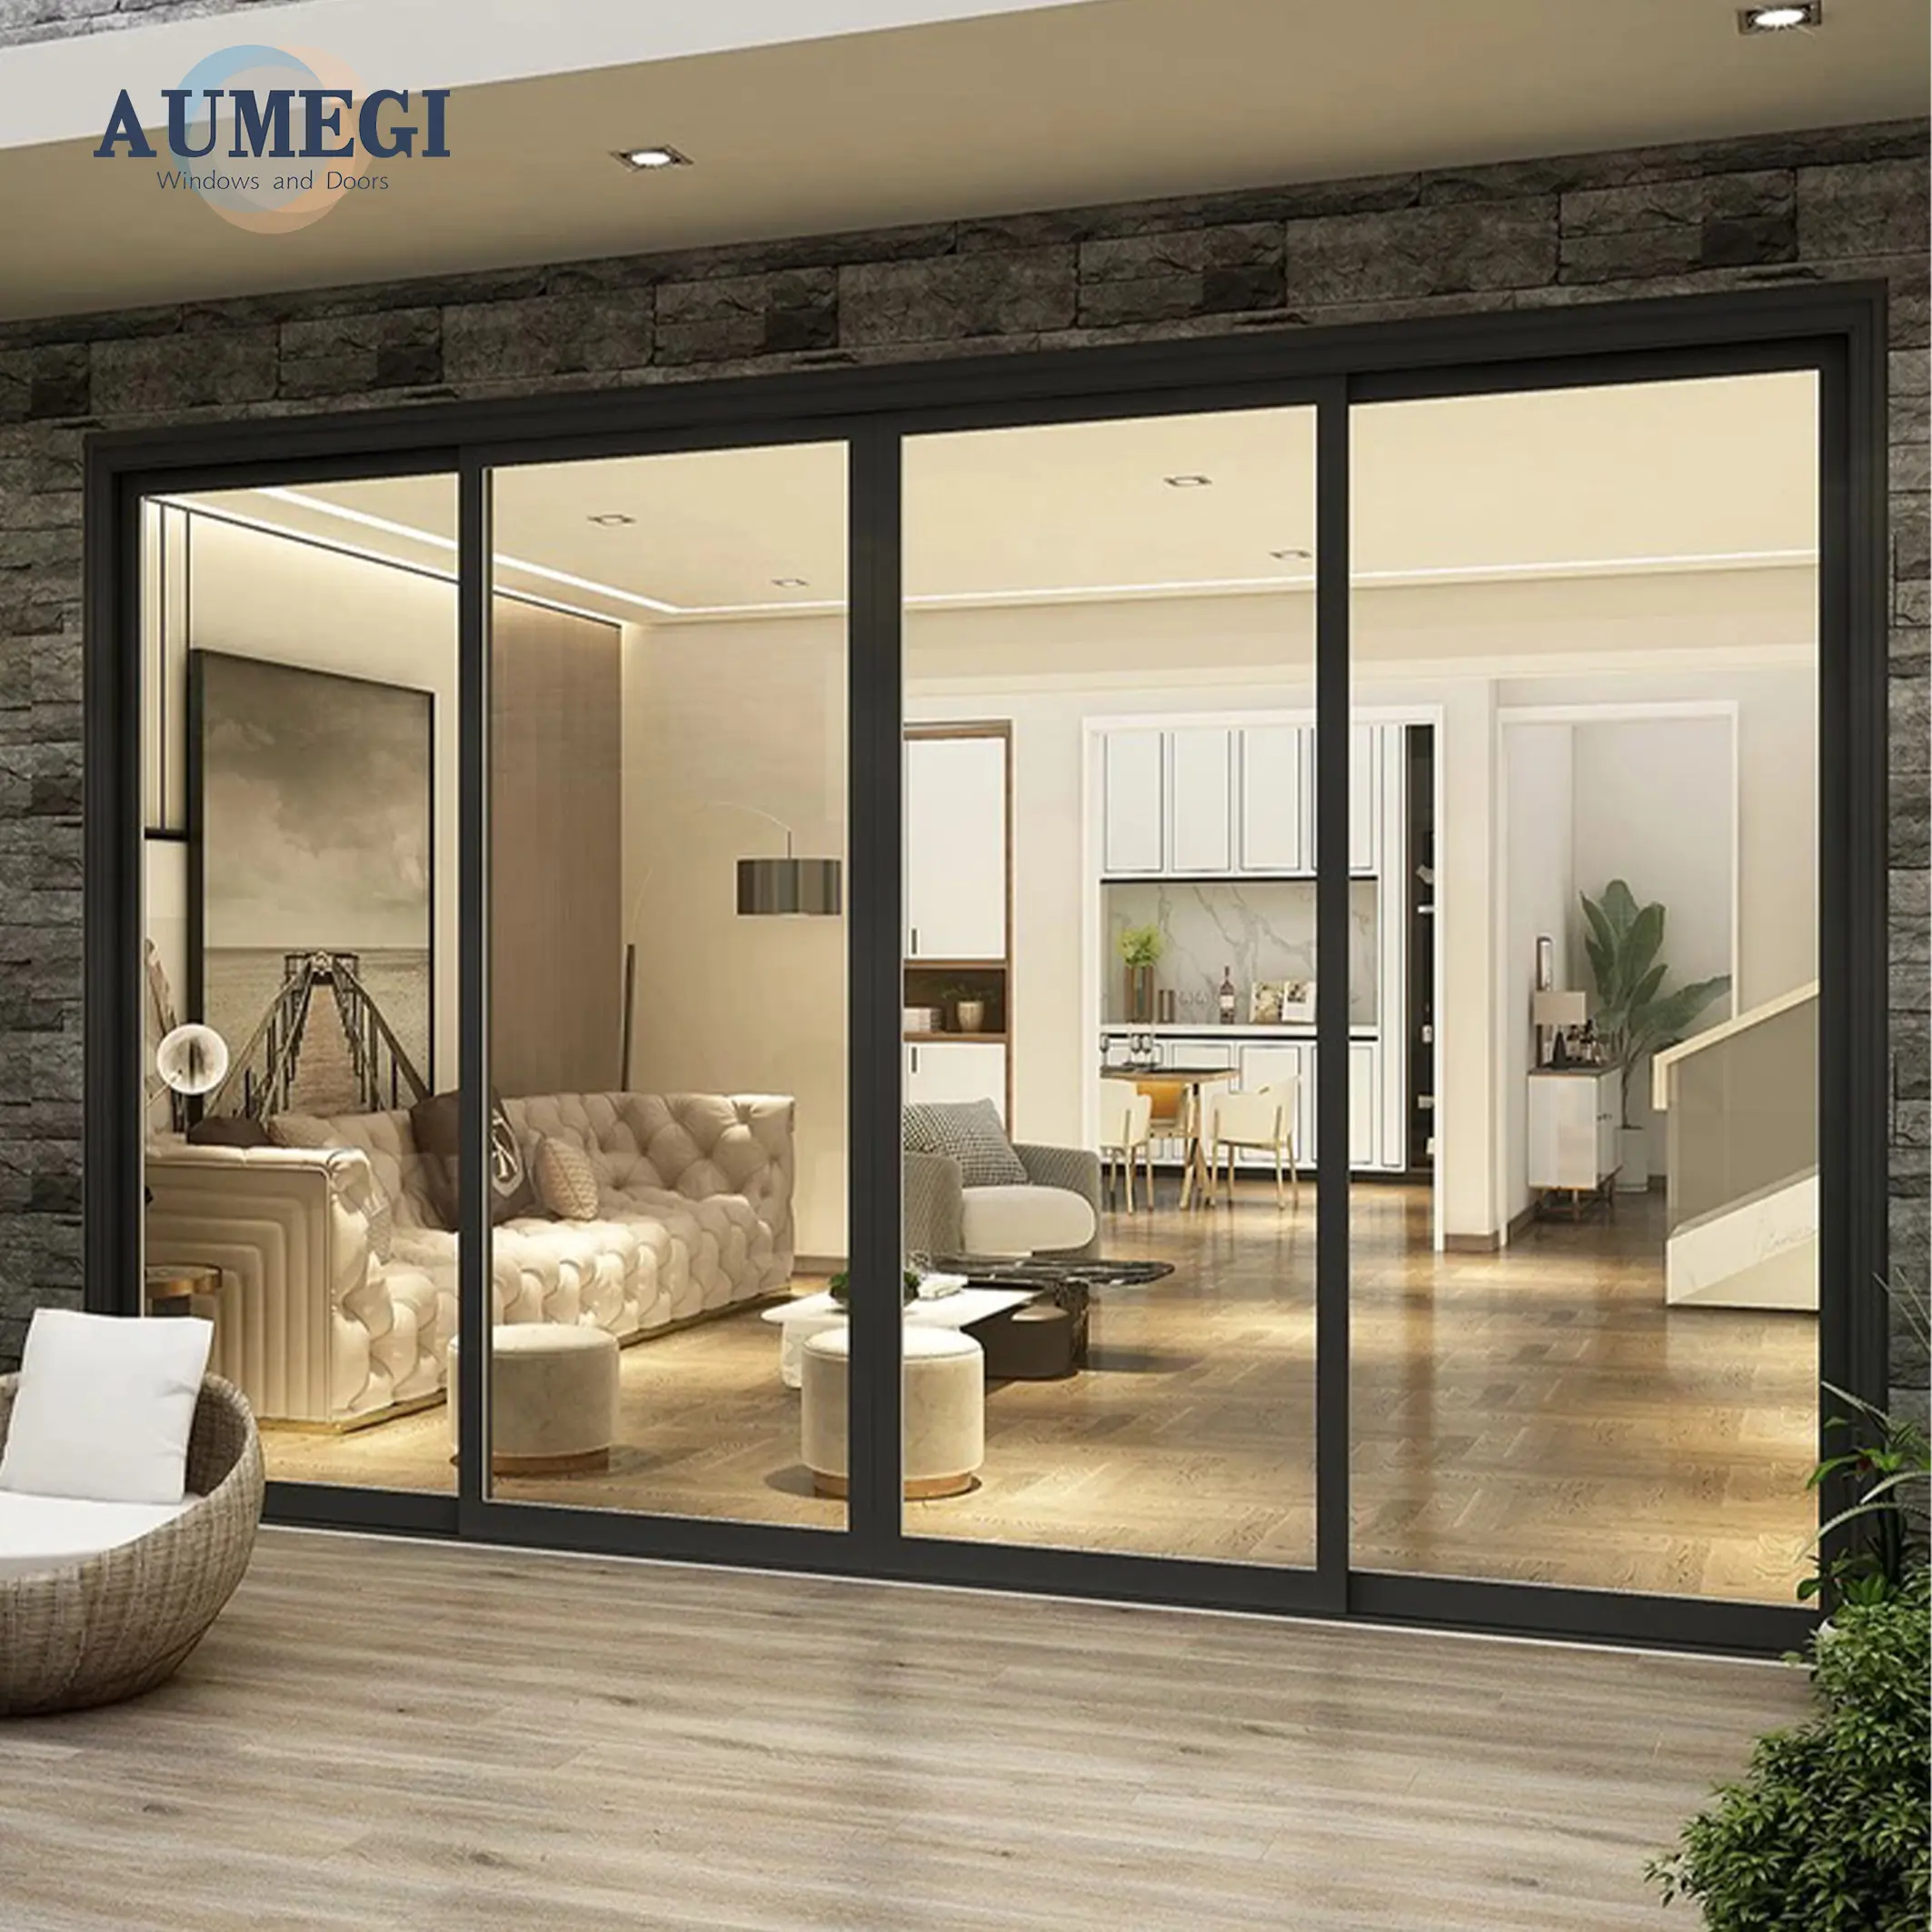 Aumegi ses geçirmez enerji tasarrufu alüminyum sürgülü kapı fiyat temperli cam veranda duş cam sürgülü kapı